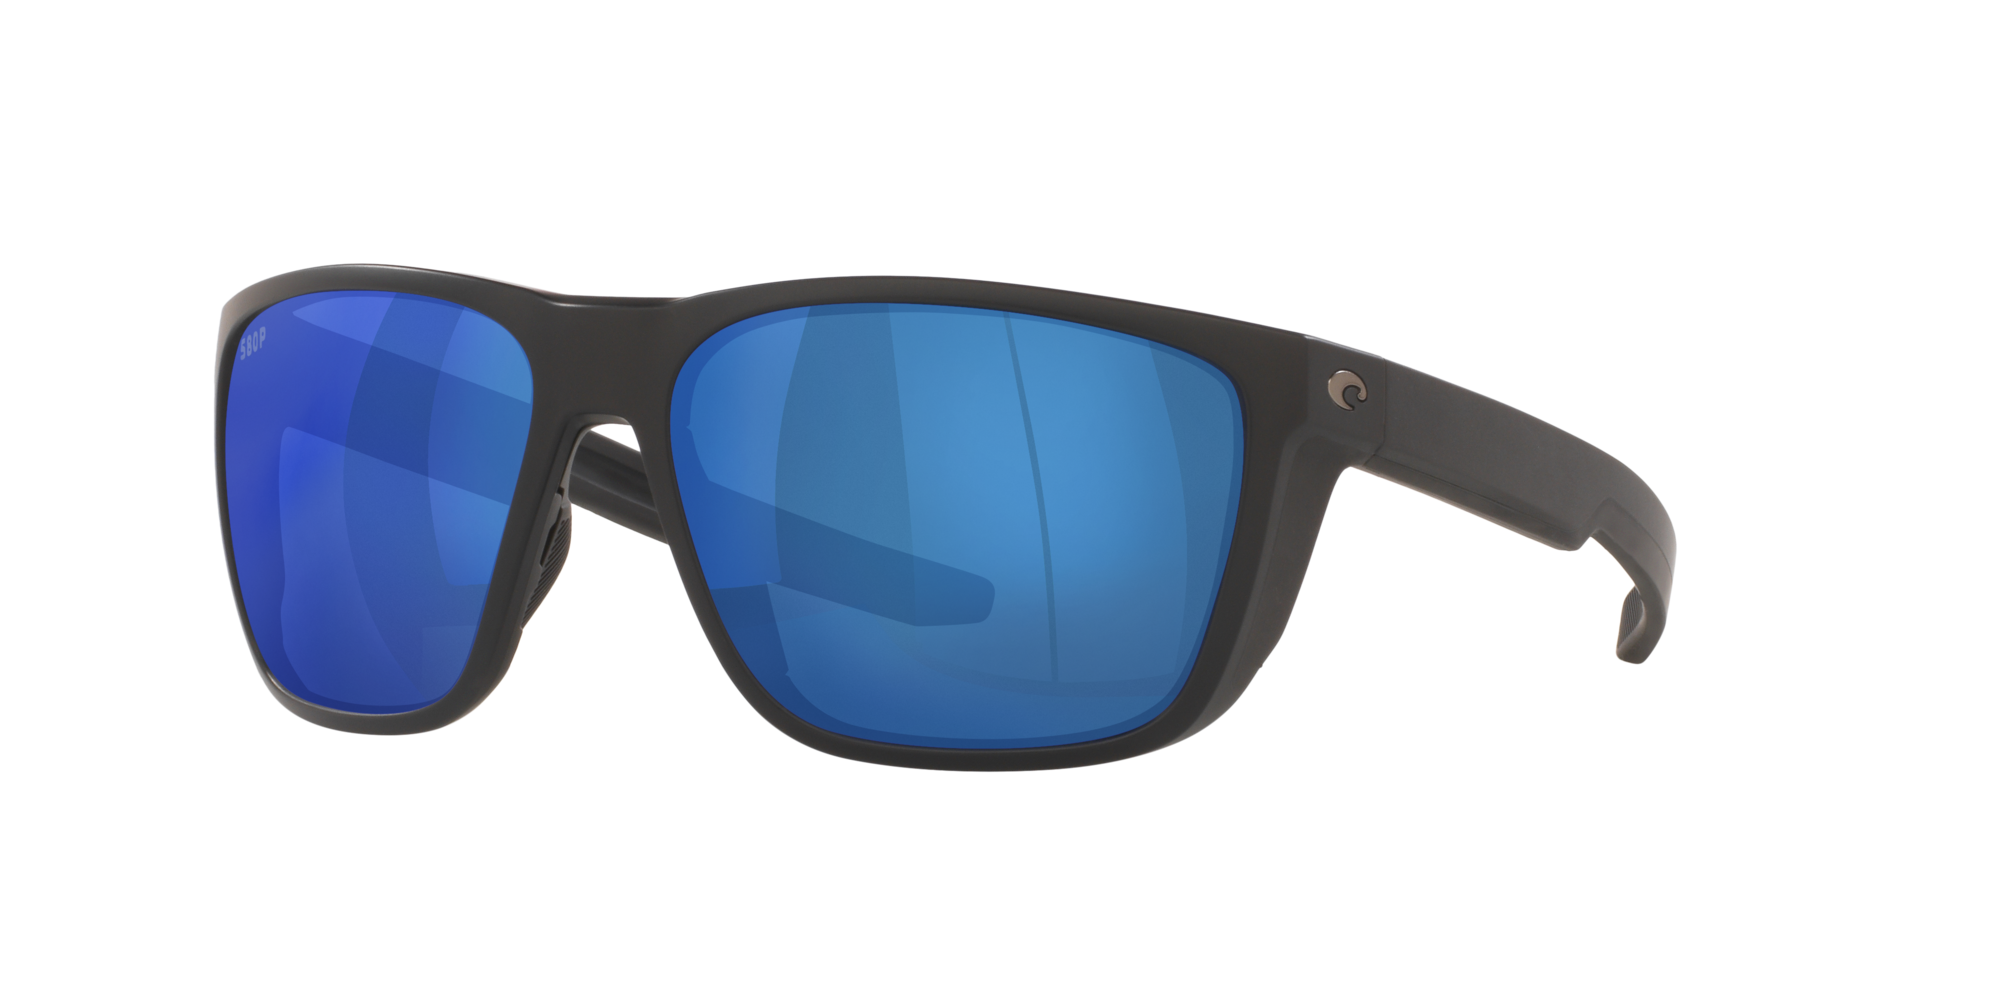 Ferg Polarized Sunglasses in Blue Mirror | Costa Del Mar®